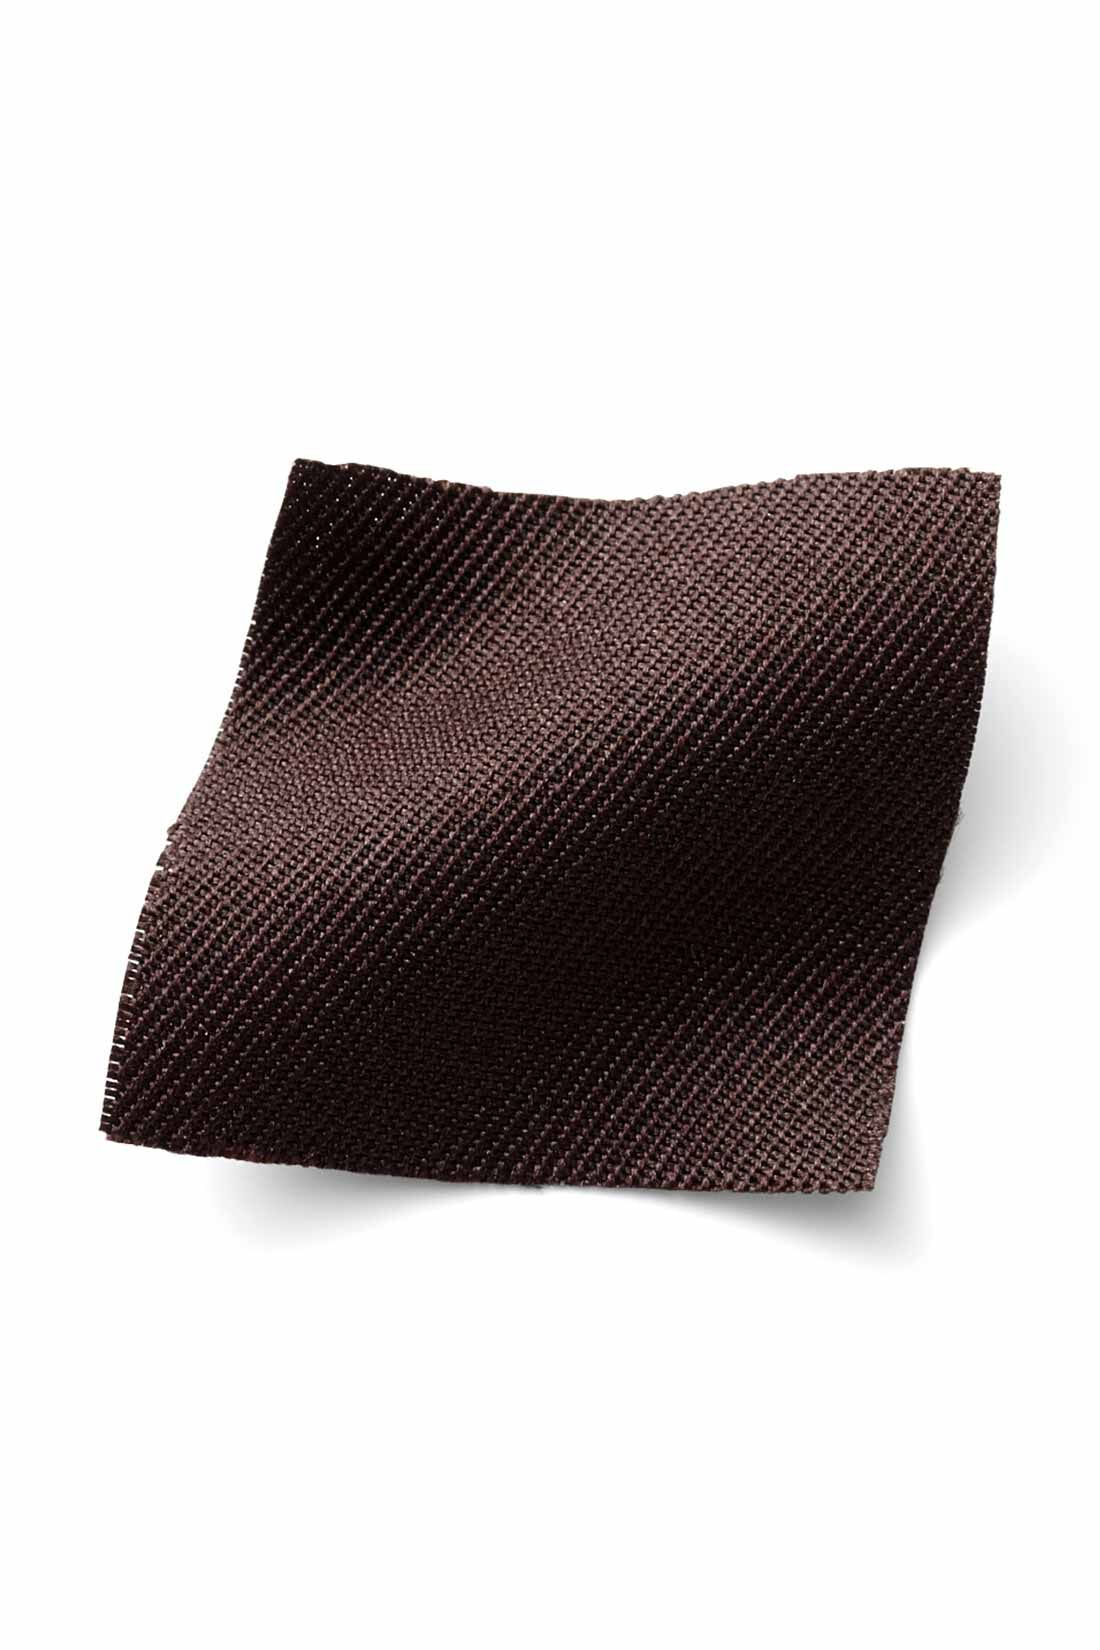 IEDIT|IEDIT[イディット]　着まわし広がる 2-WAY仕様がうれしい大人シルエットのジャンパースカート〈ブラウン〉|季節を問わずはきやすい、ほどよい厚みの布はく素材。